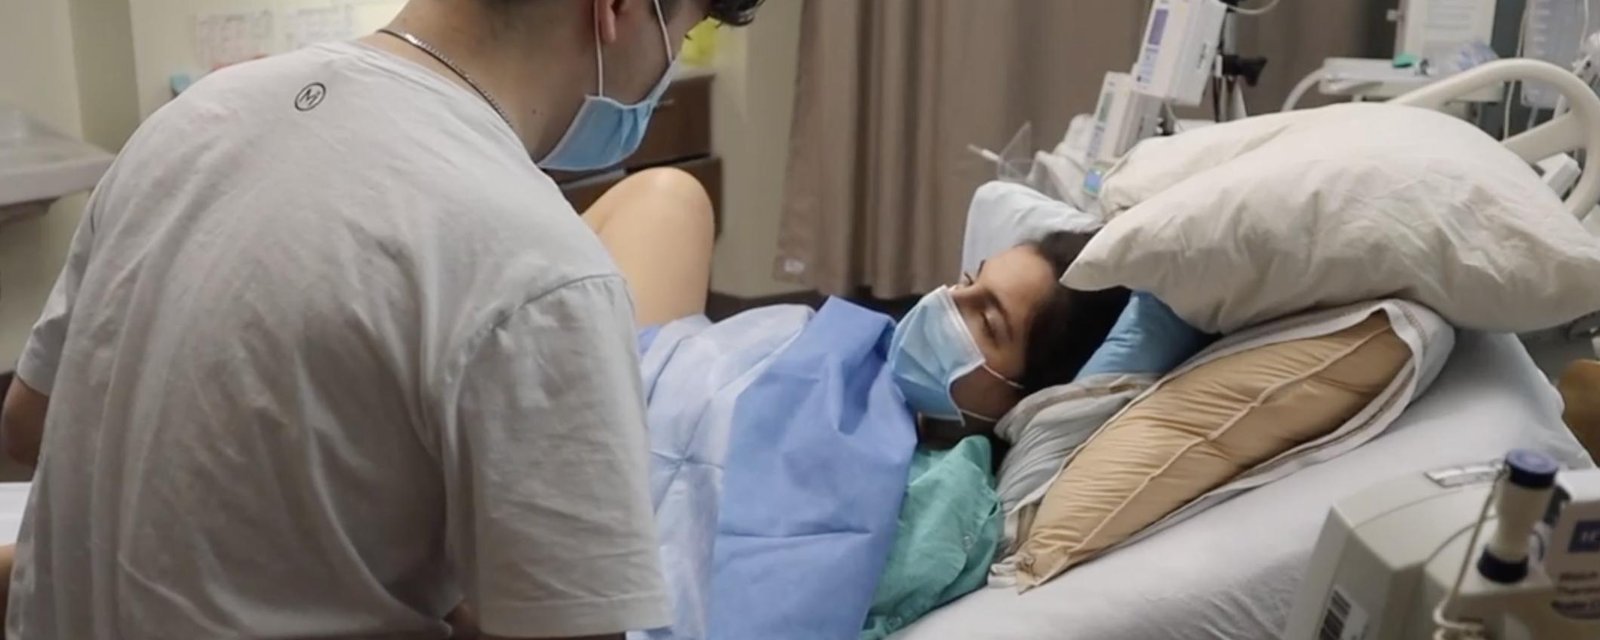 À VOIR: Rafaëlle Roy publie une vidéo de son accouchement et des premiers instants de sa petite Maya